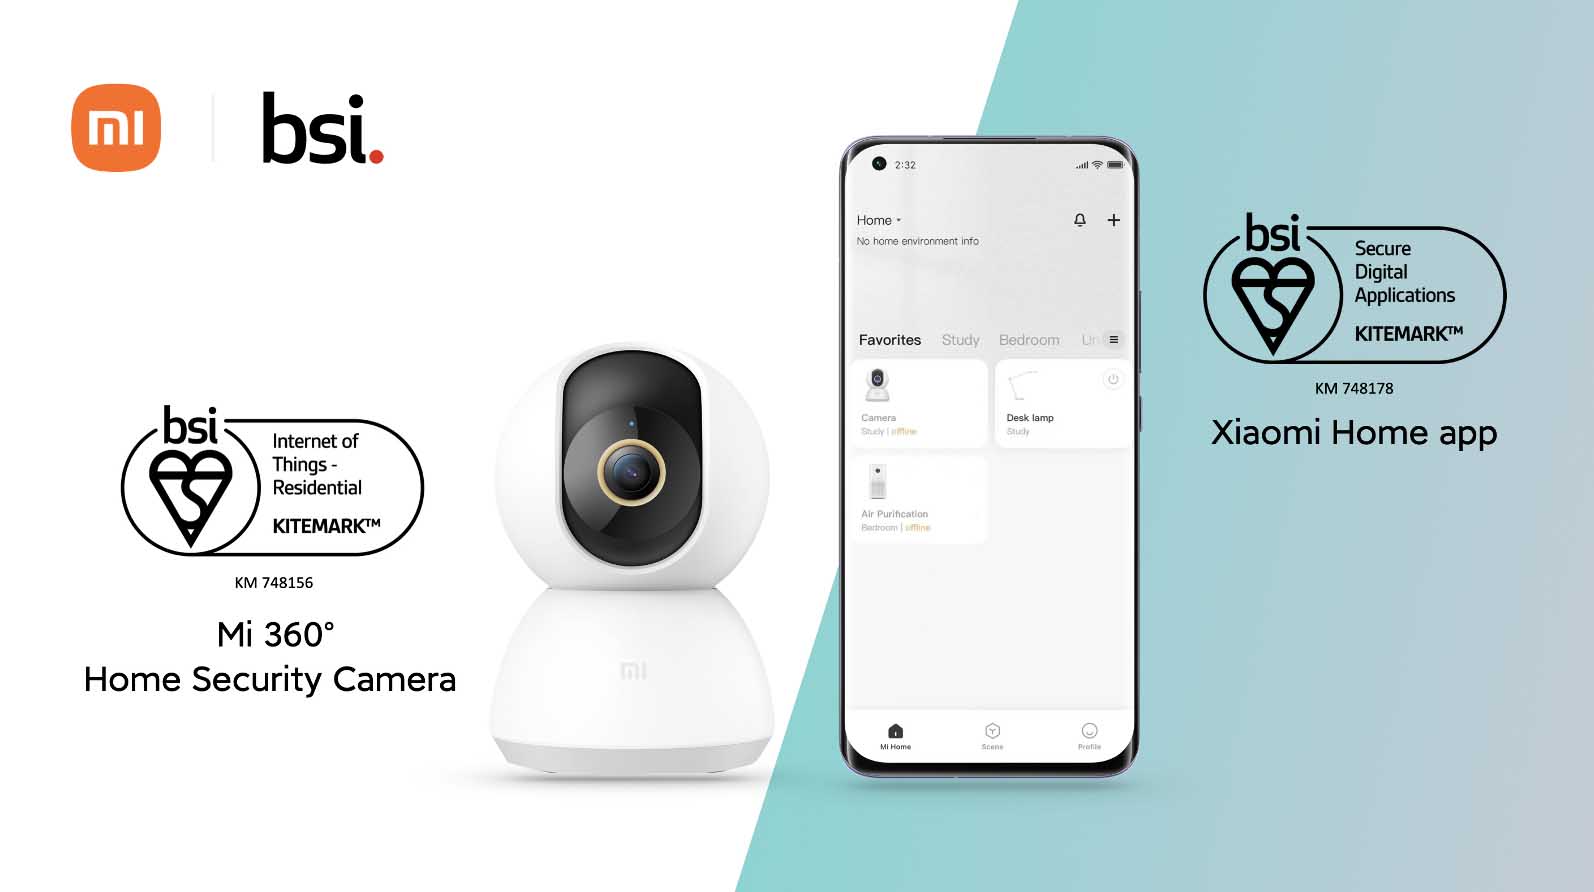 Camera an ninh Mi 360° Home Security Camera và ứng dụng Xiaomi Home đạt Chứng nhận BSI Kitemark™ cho Thiết bị IoT dân dụng và Ứng dụng Kỹ thuật số an toàn